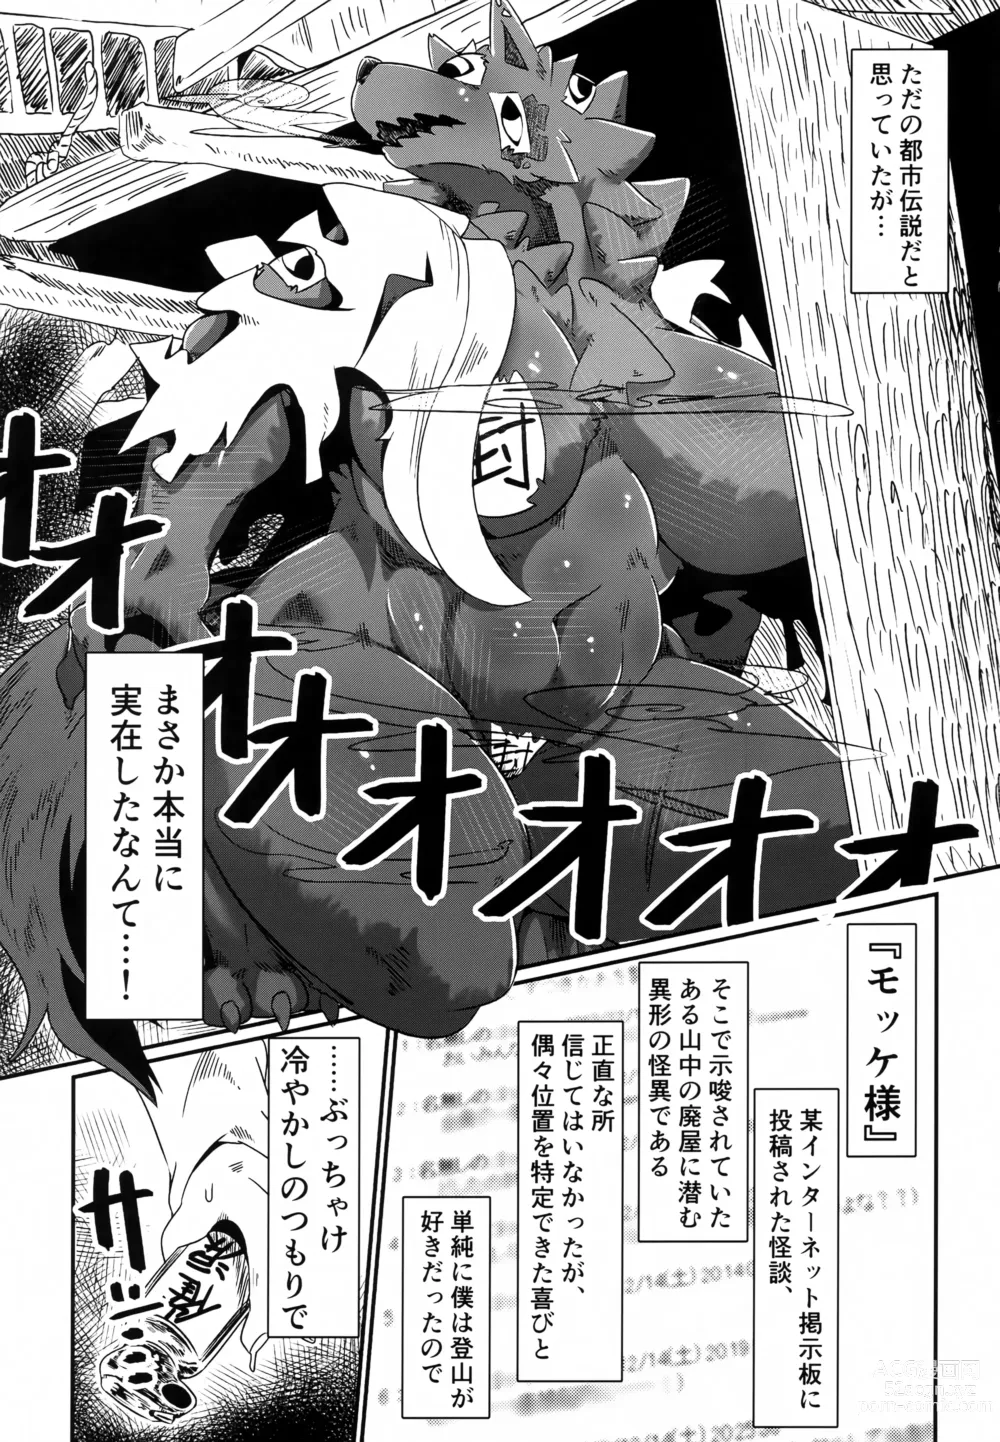 Page 4 of doujinshi Shinu Hodo Sake Ochini Naranai Dekai Mesukemo